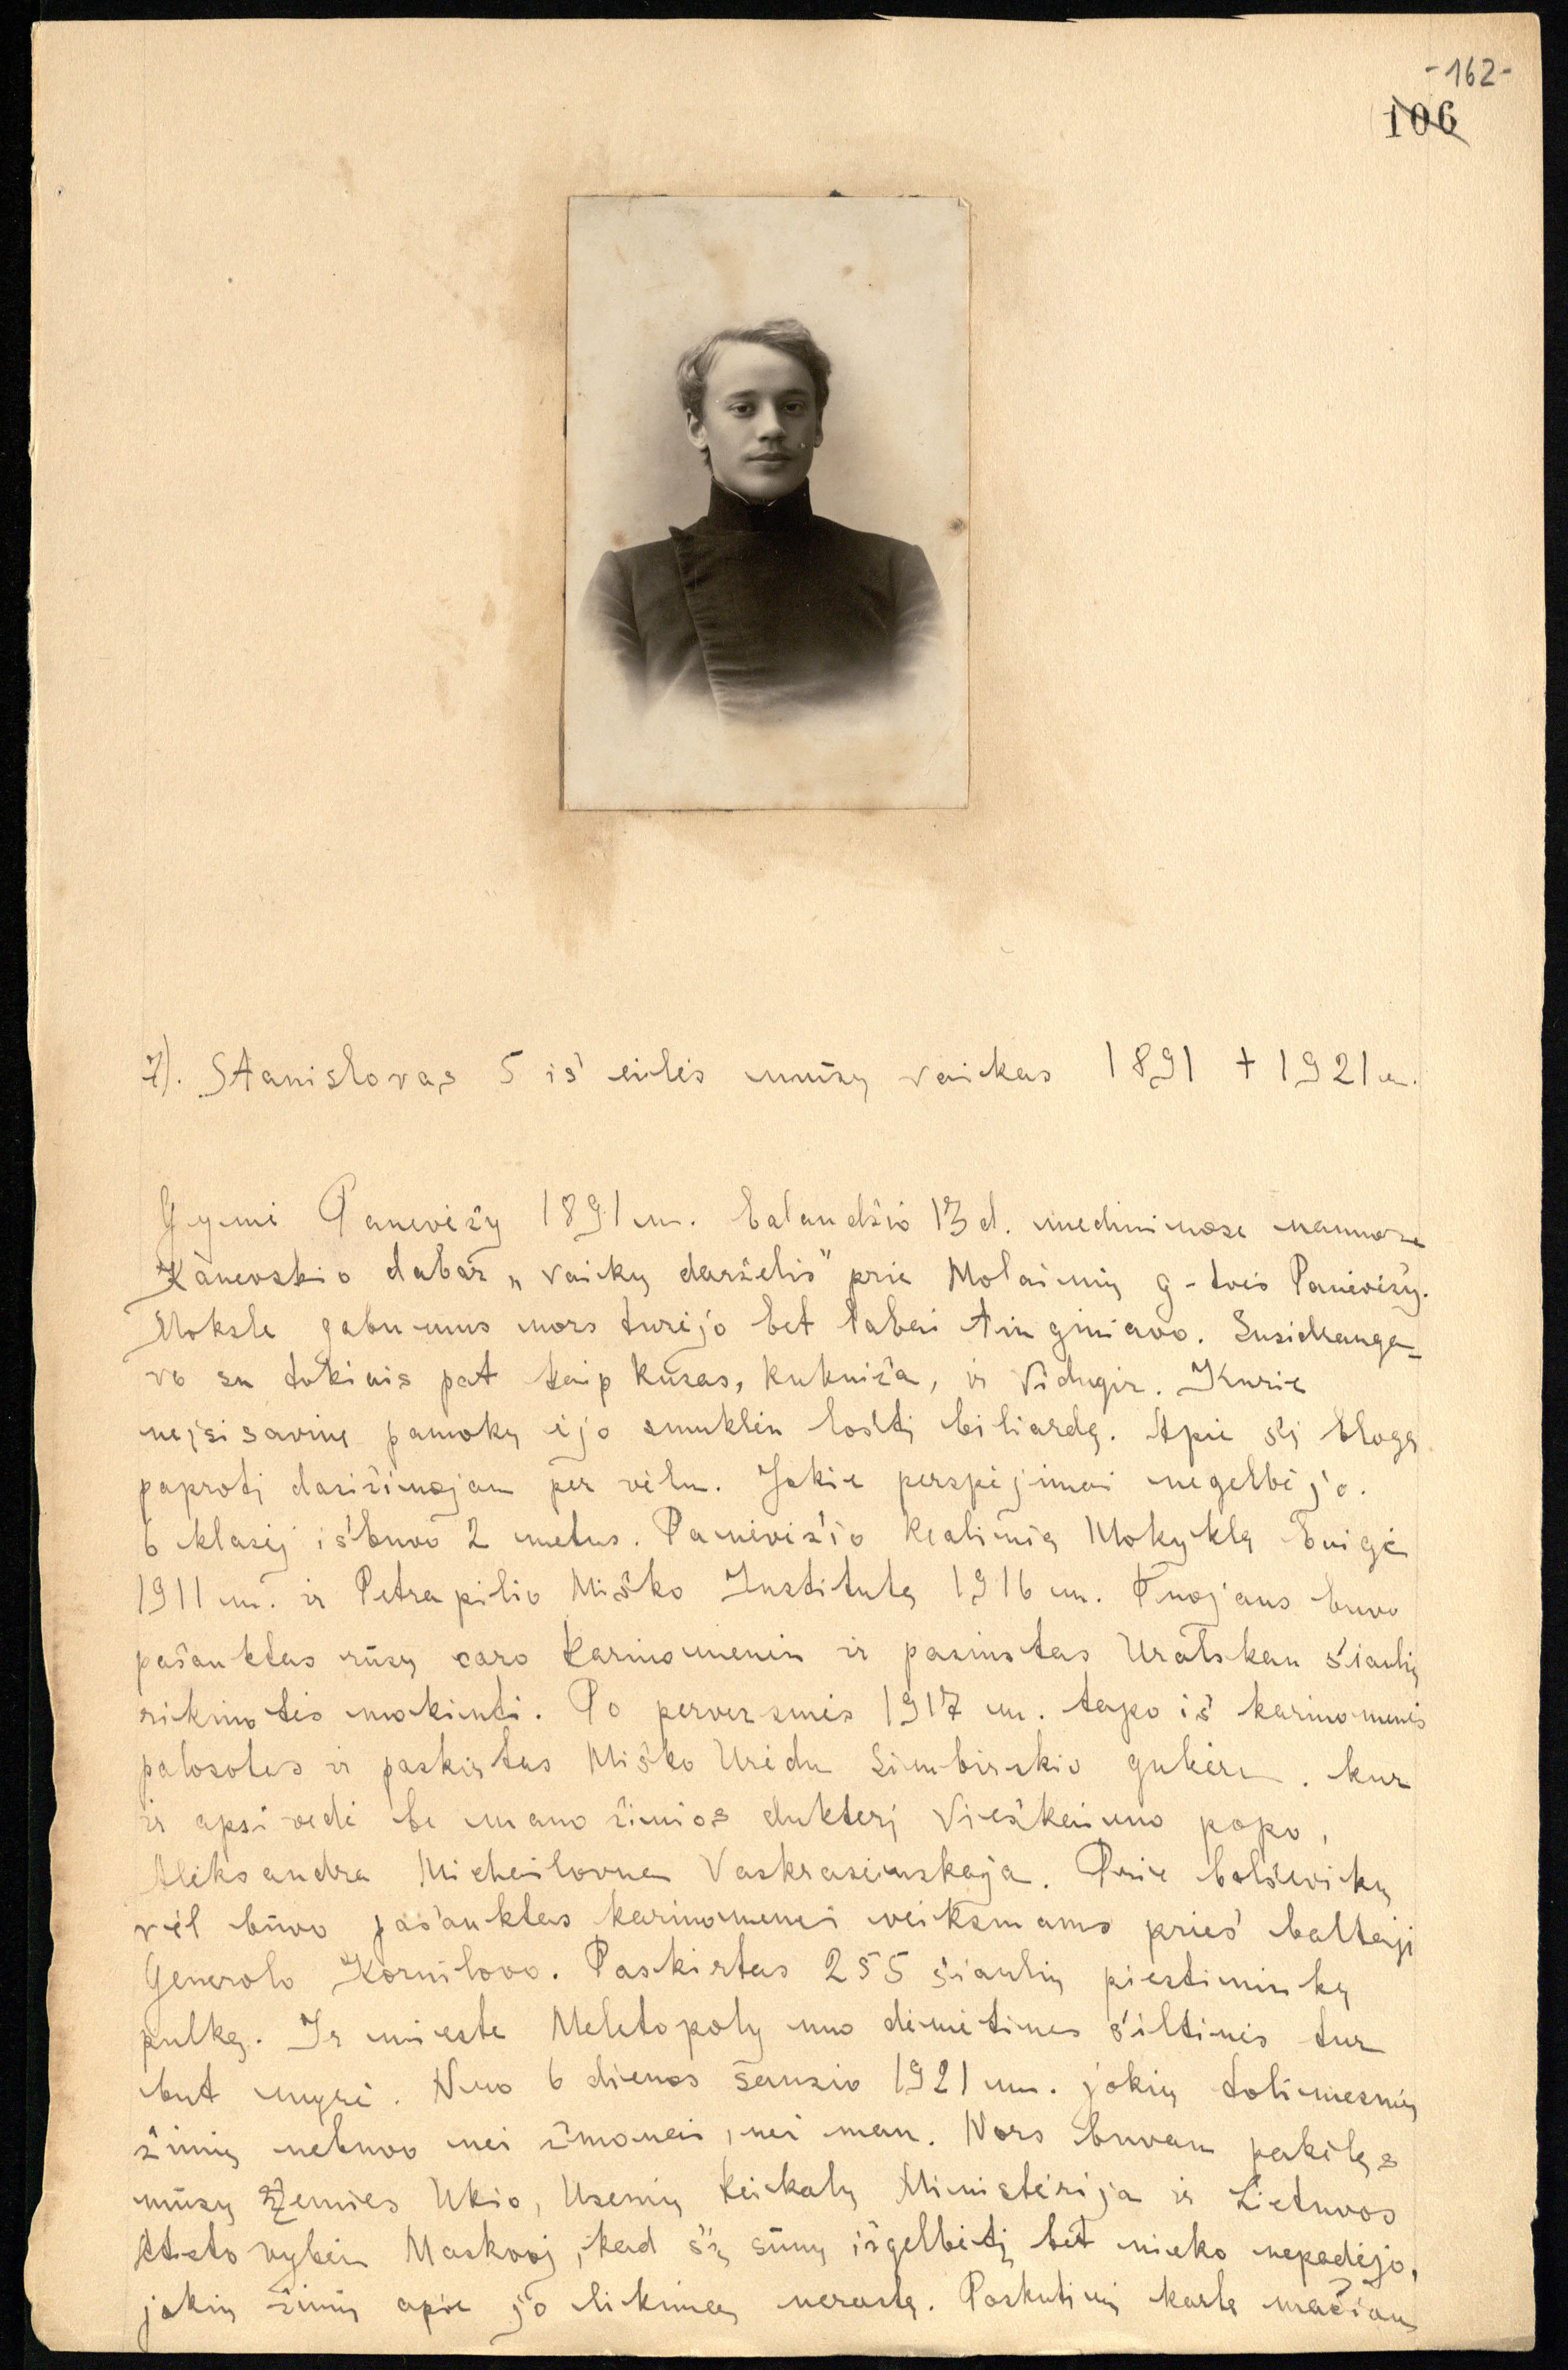 Panevėžio visuomenės veikėjo Juozapo Kozakevičiaus atsiminimų „Amžiaus kronika“ fragmentas, kuriame pateikiama jo sūnaus Stanislovo Kozakevičiaus (1891–1921) biografija